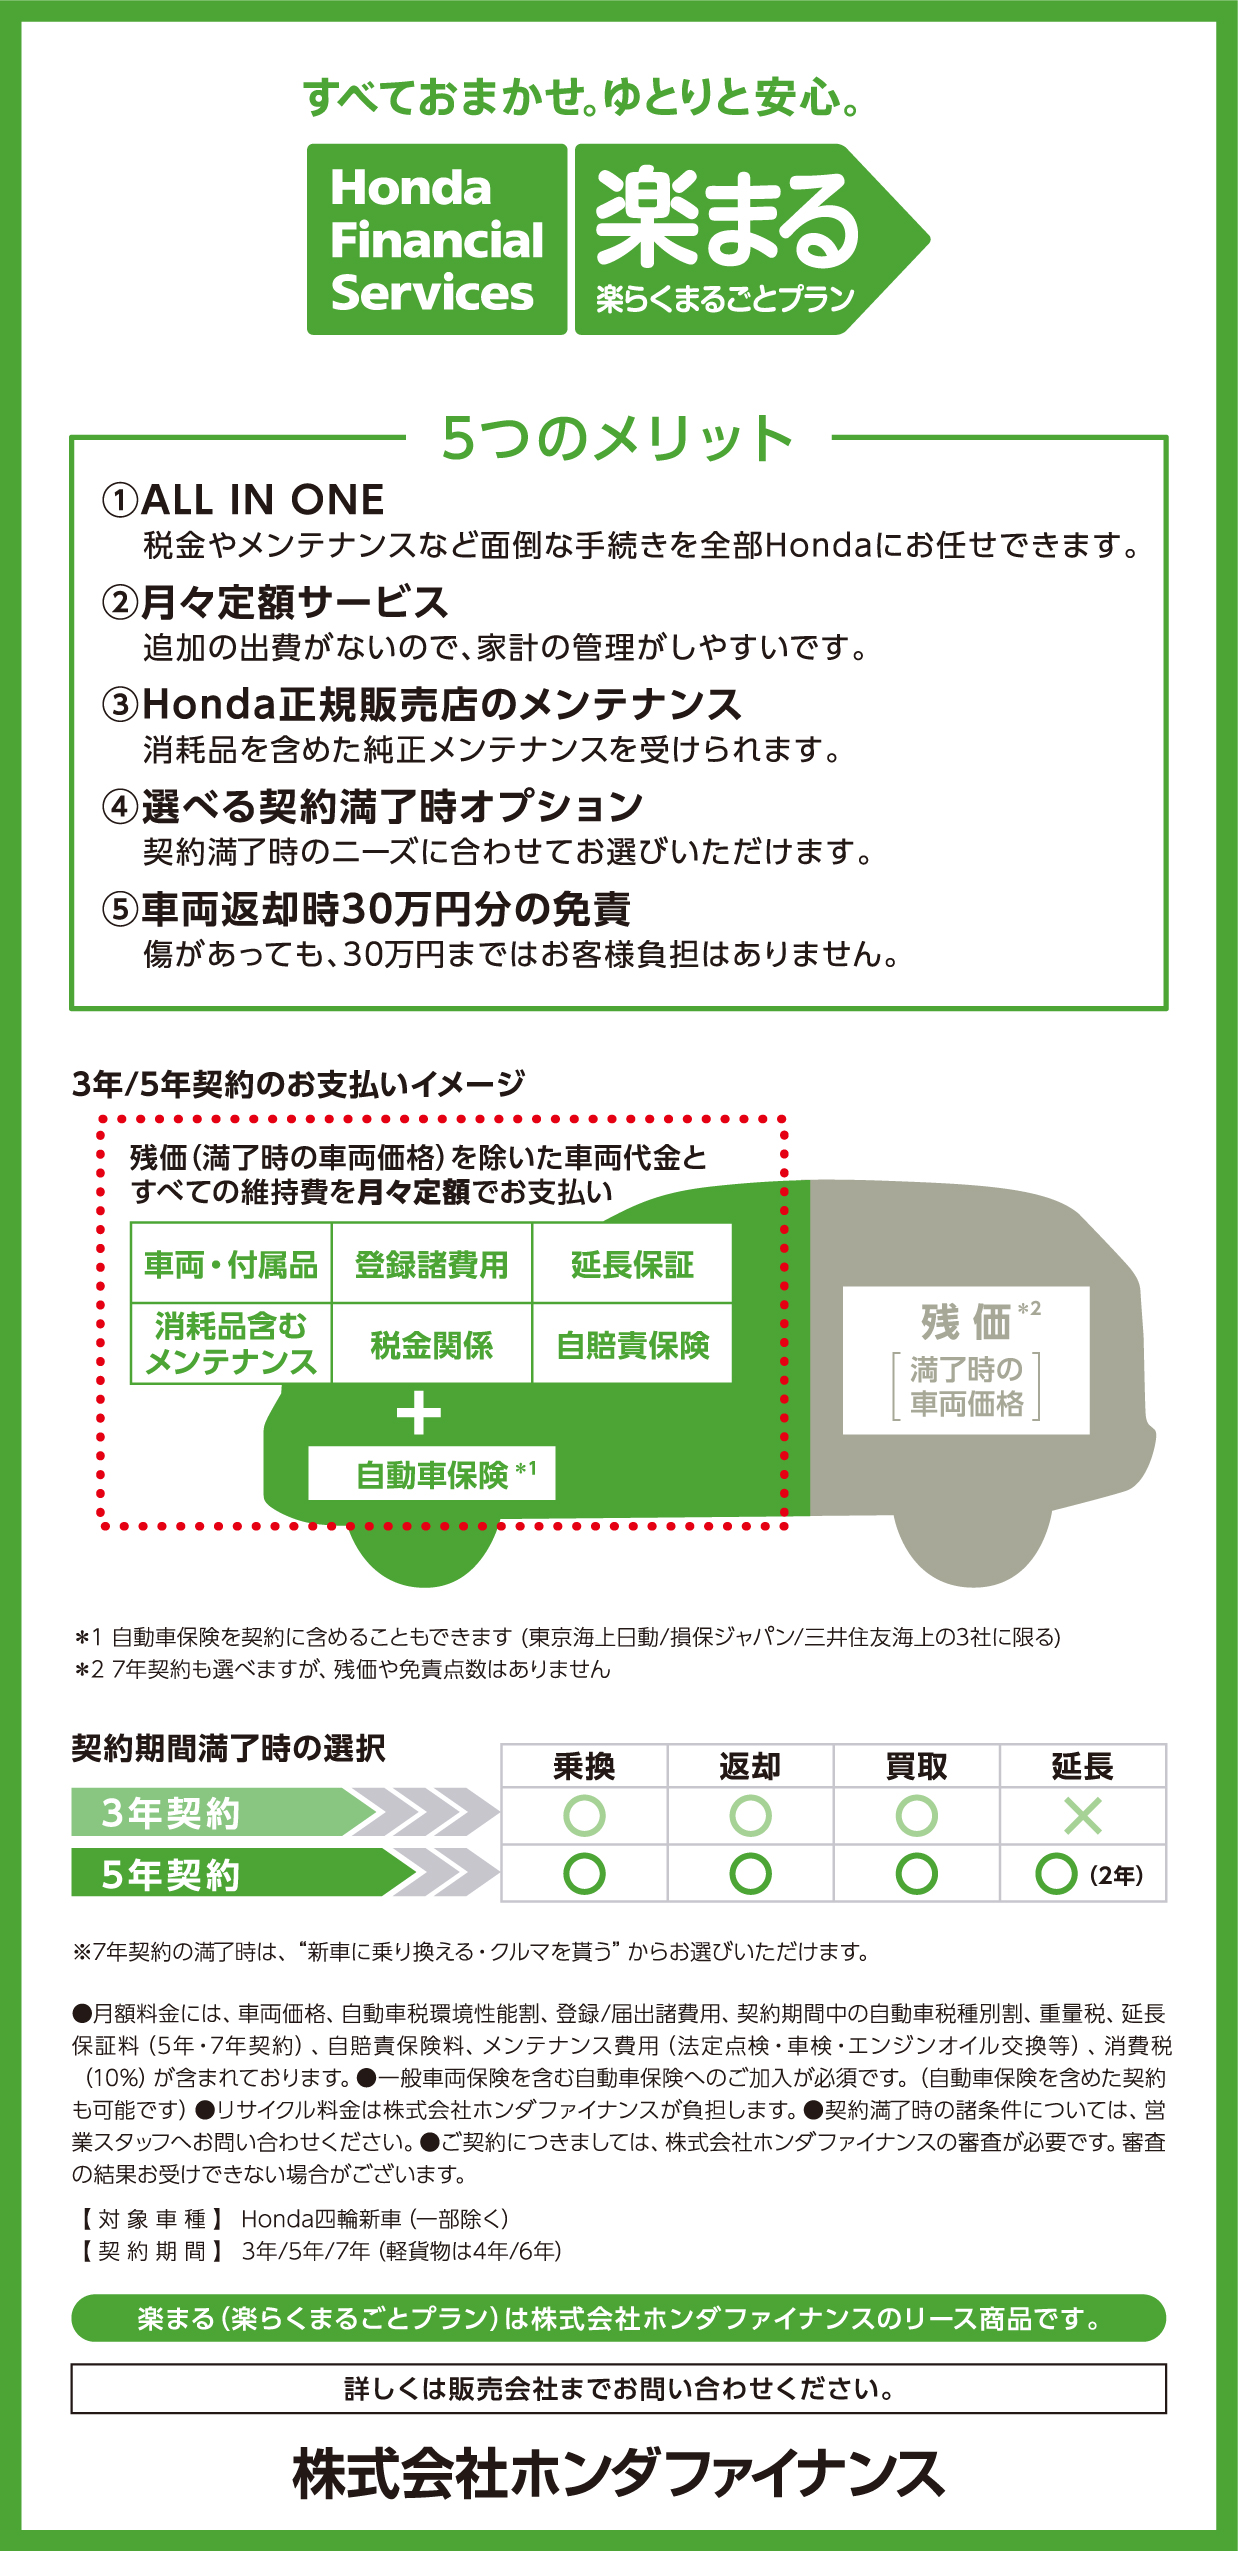 すべておまかせ ゆとりと安心 楽らくまるごとプラン 公式 大阪府 Honda Cars 試乗車 販売店検索ポータル